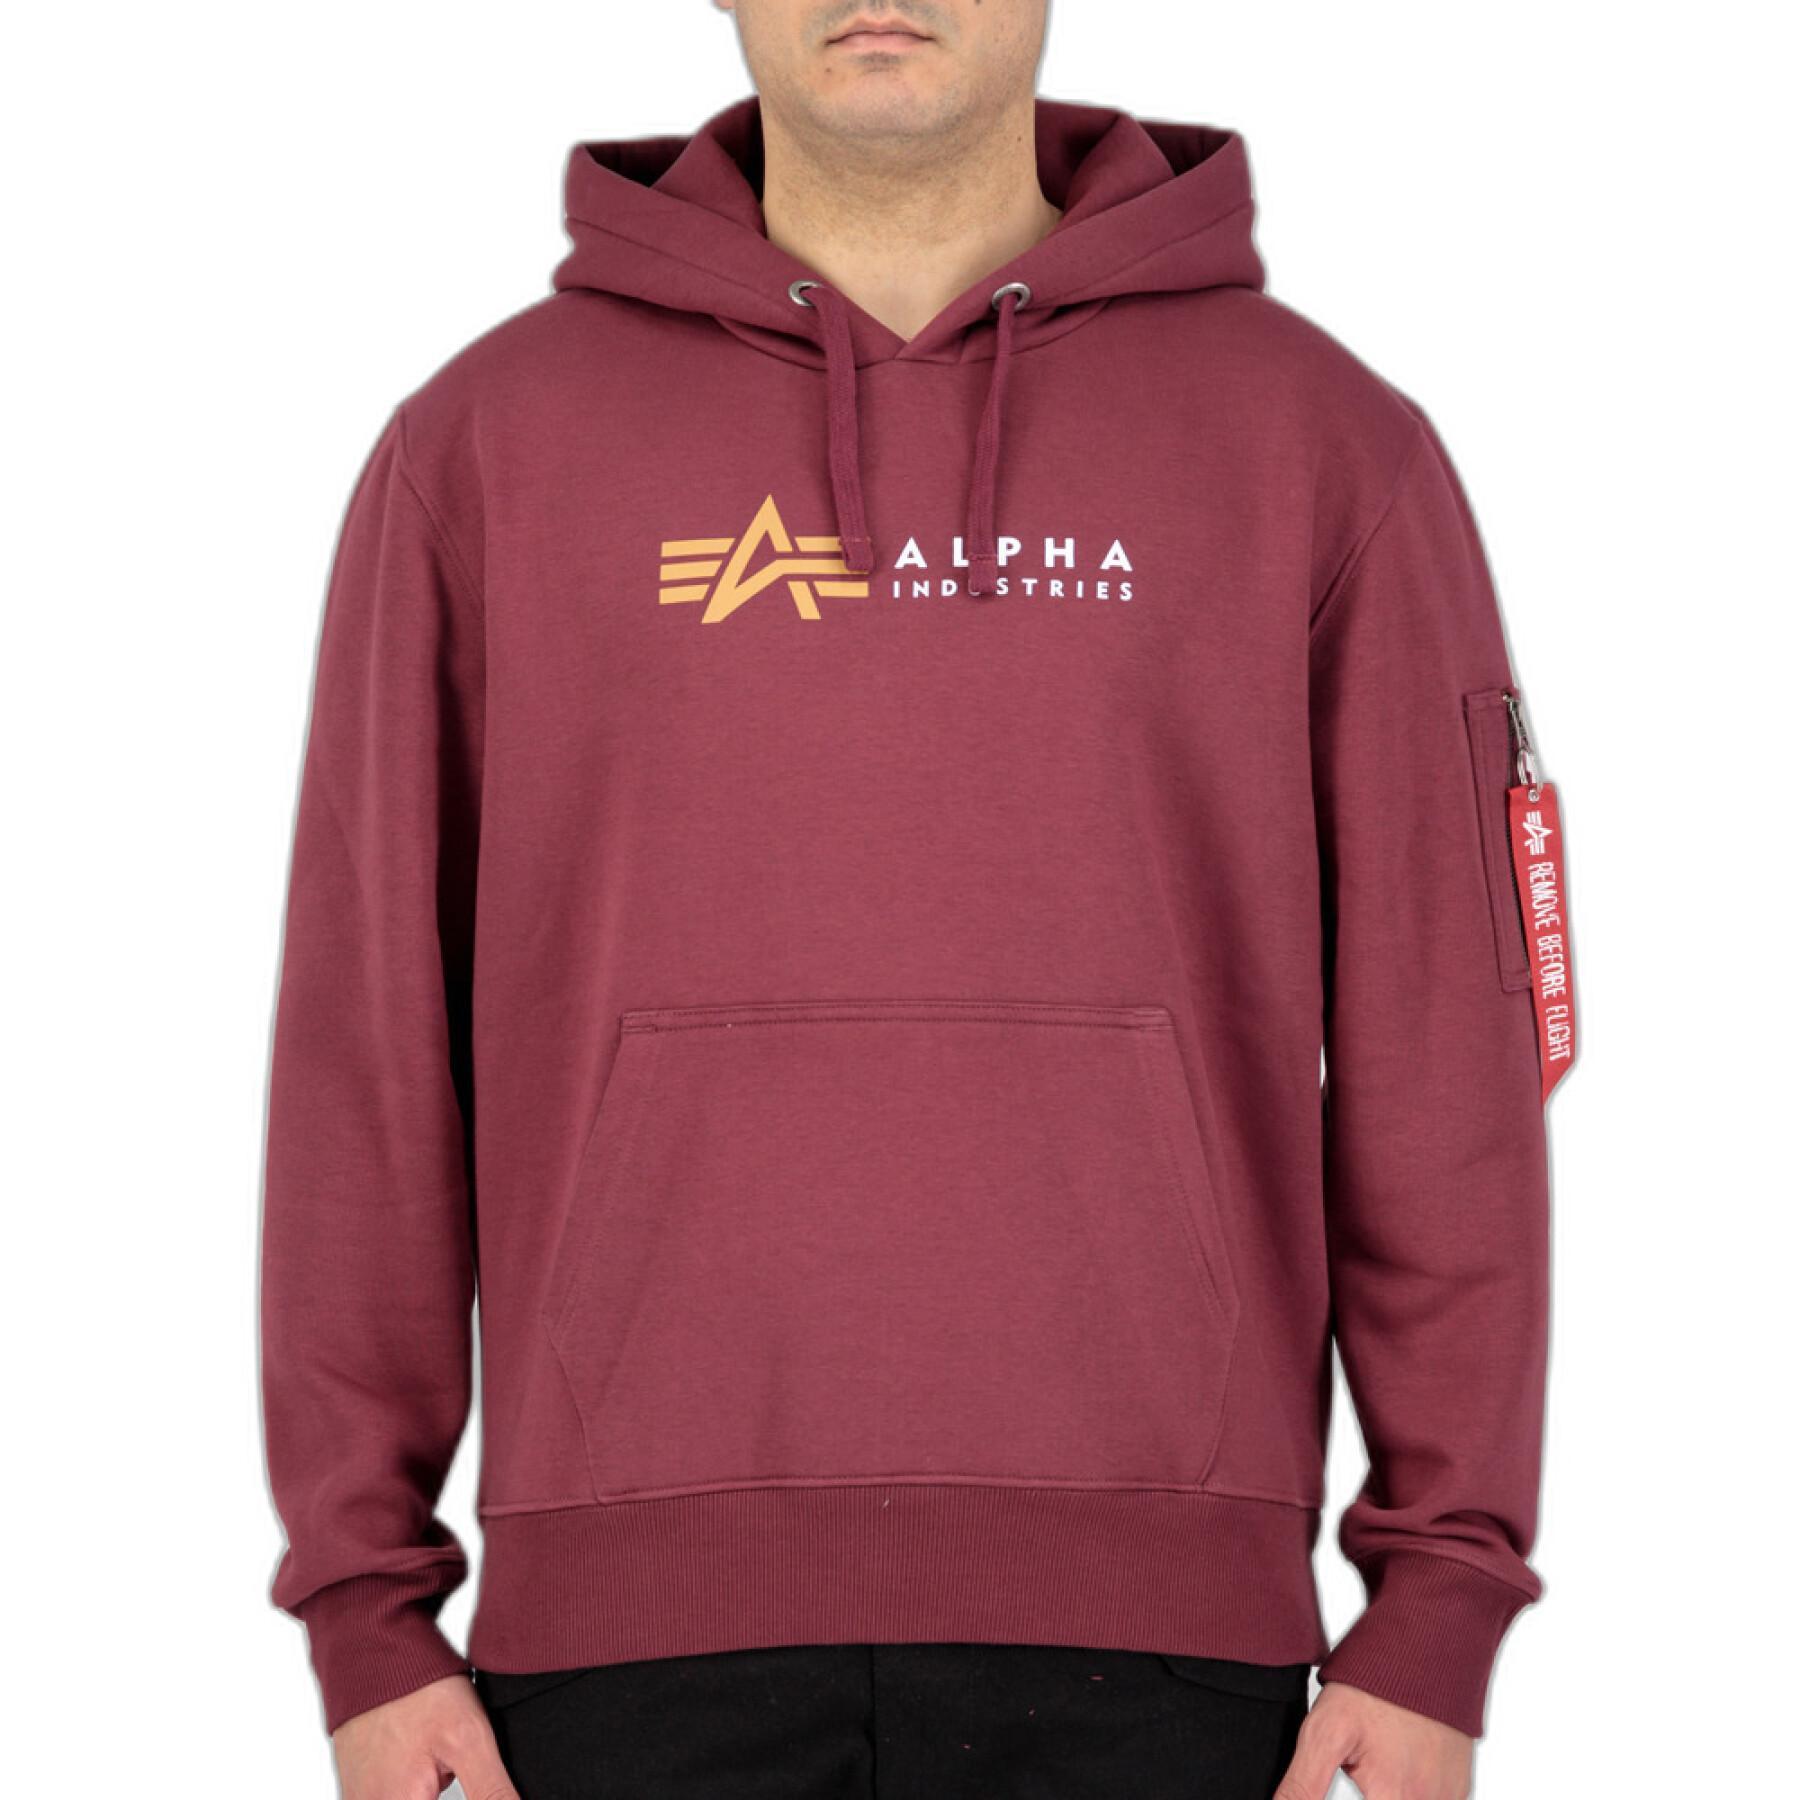 Alpha - sweatshirt - Label Streetwear Industries - Sweats Men Hooded